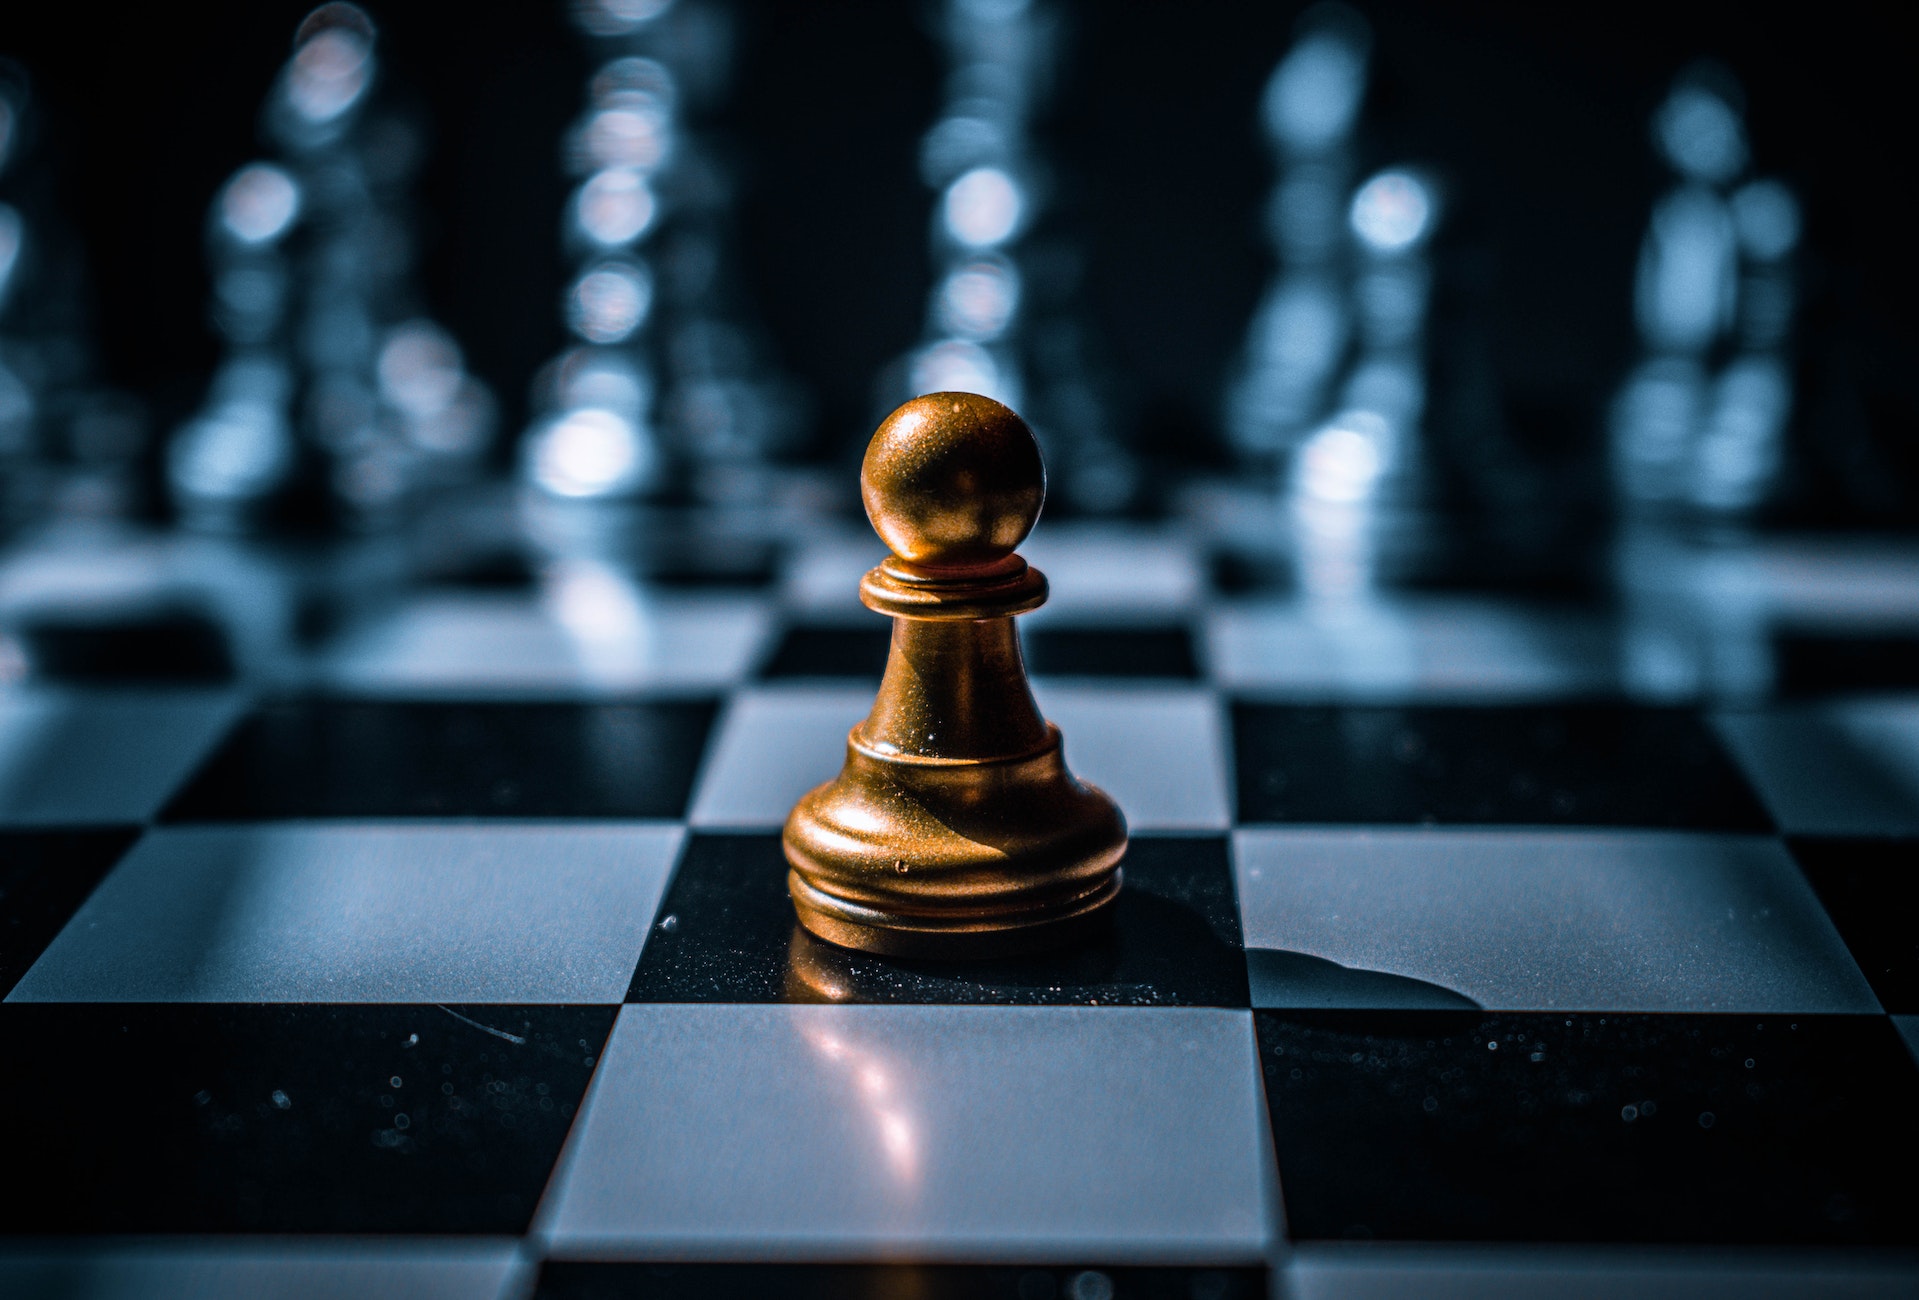 Decyzja szachowa - czy publikować widełki wynagrodzeń w ogłoszeniach